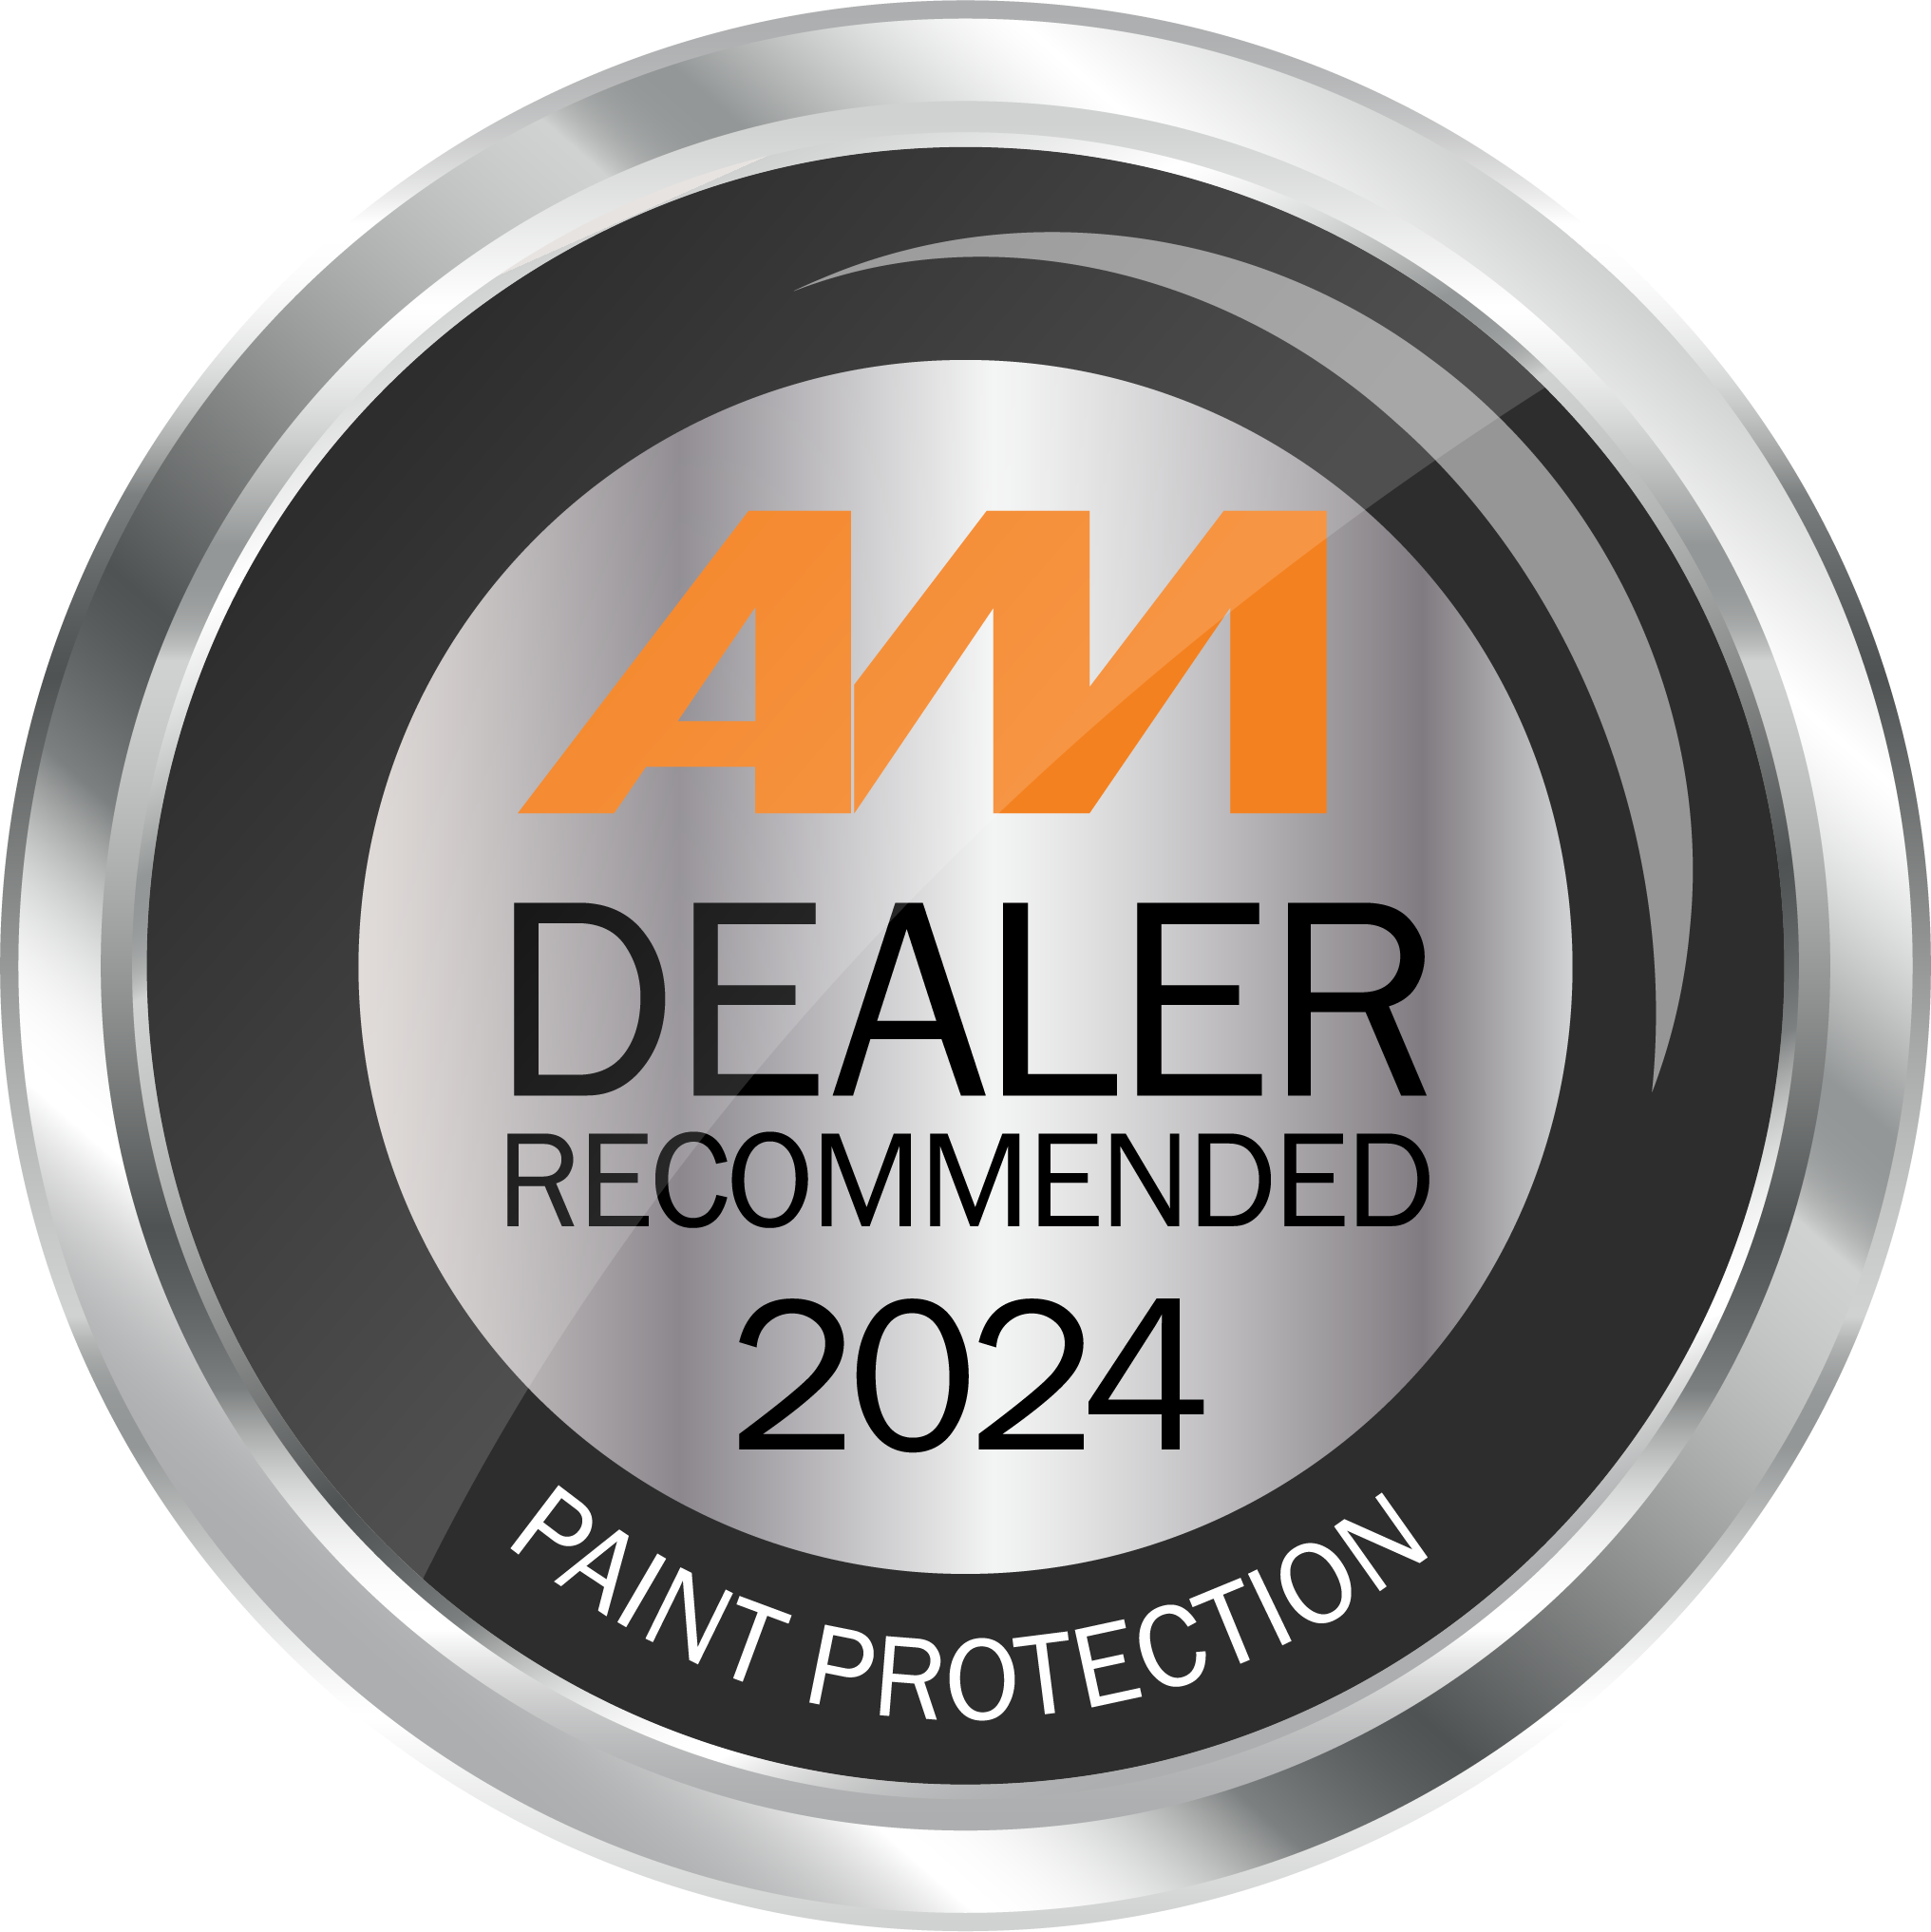 AM Dealer Rec 2024_paint protection.png